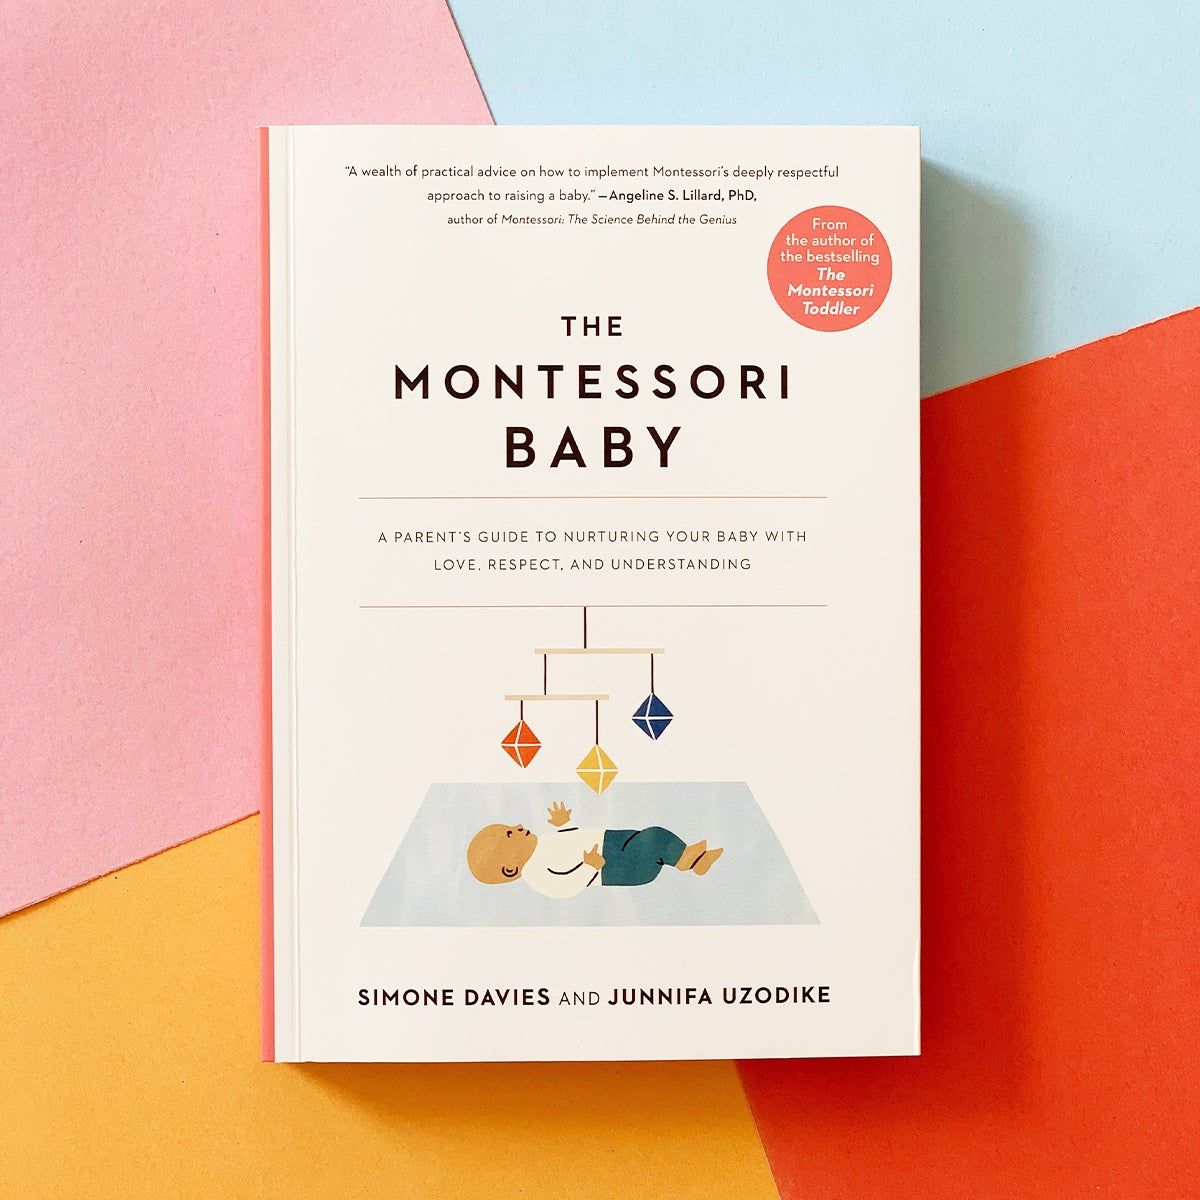 The Montessori Baby by Simone Davies and Junnifa Uzodike